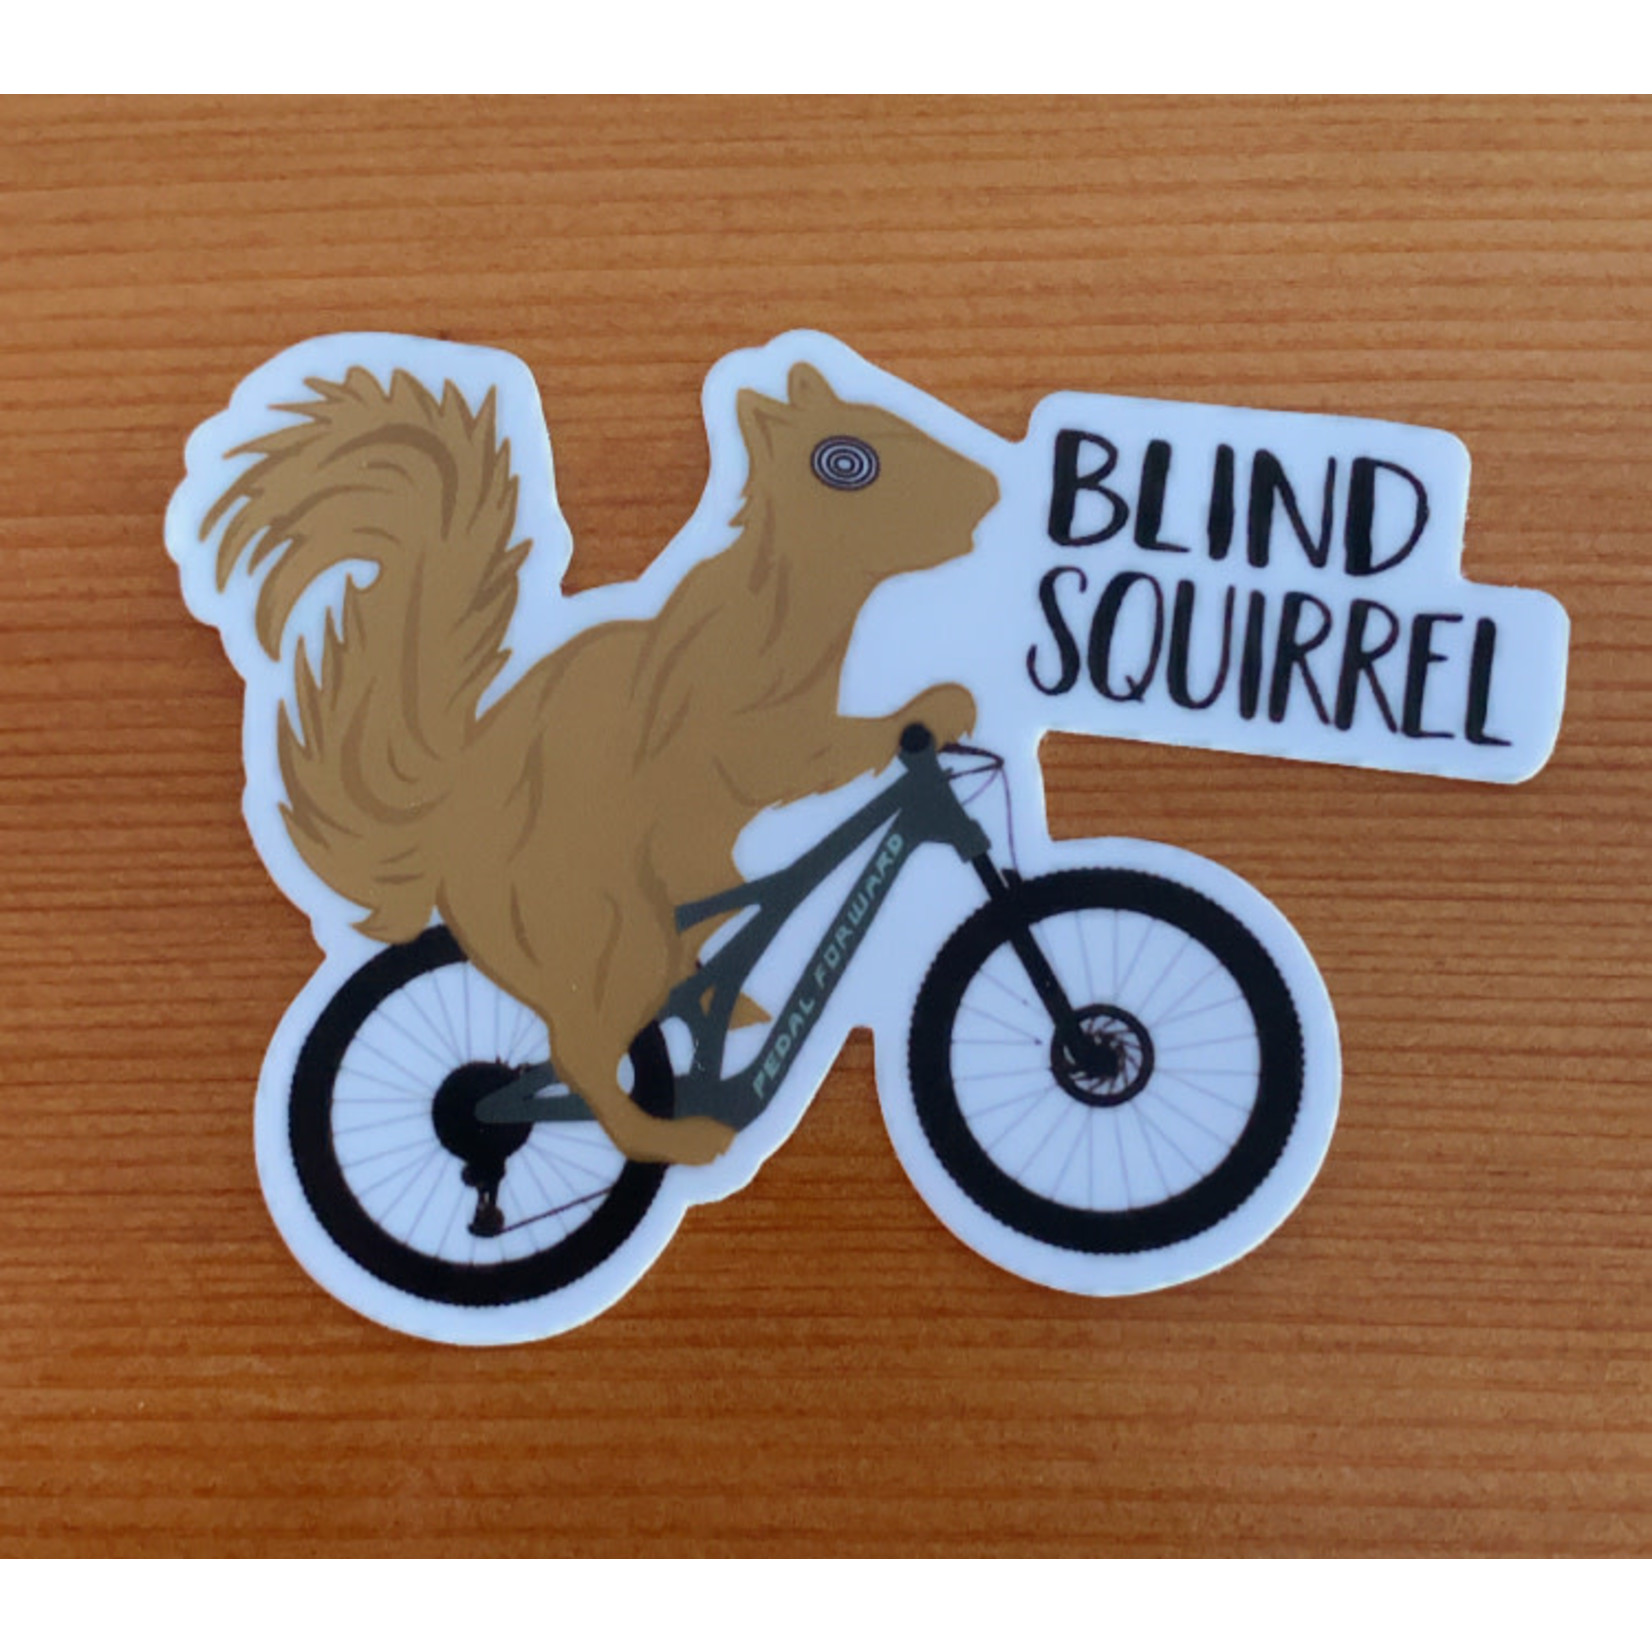 Blind Squirrel sticker